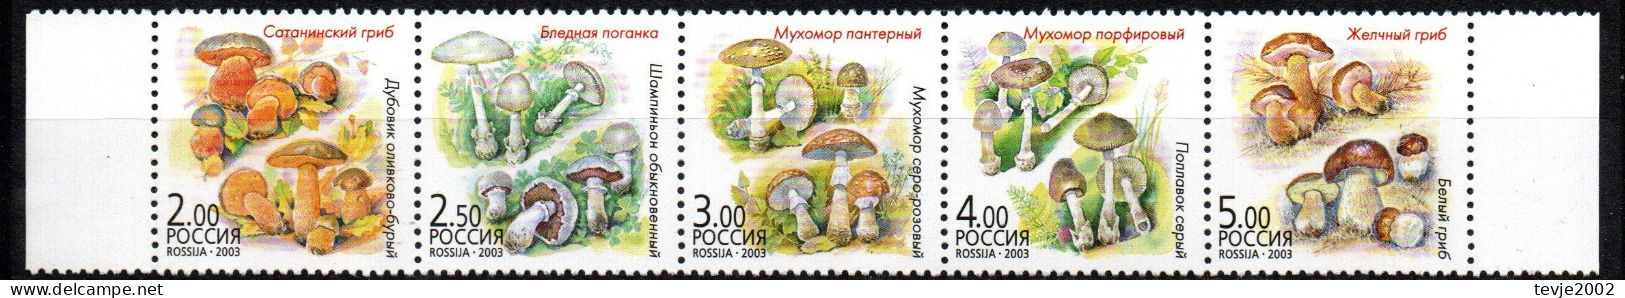 Russland 2003 - Mi.Nr. 1108 - 1112 - Postfrisch MNH - Pilze Mushrooms - Pilze